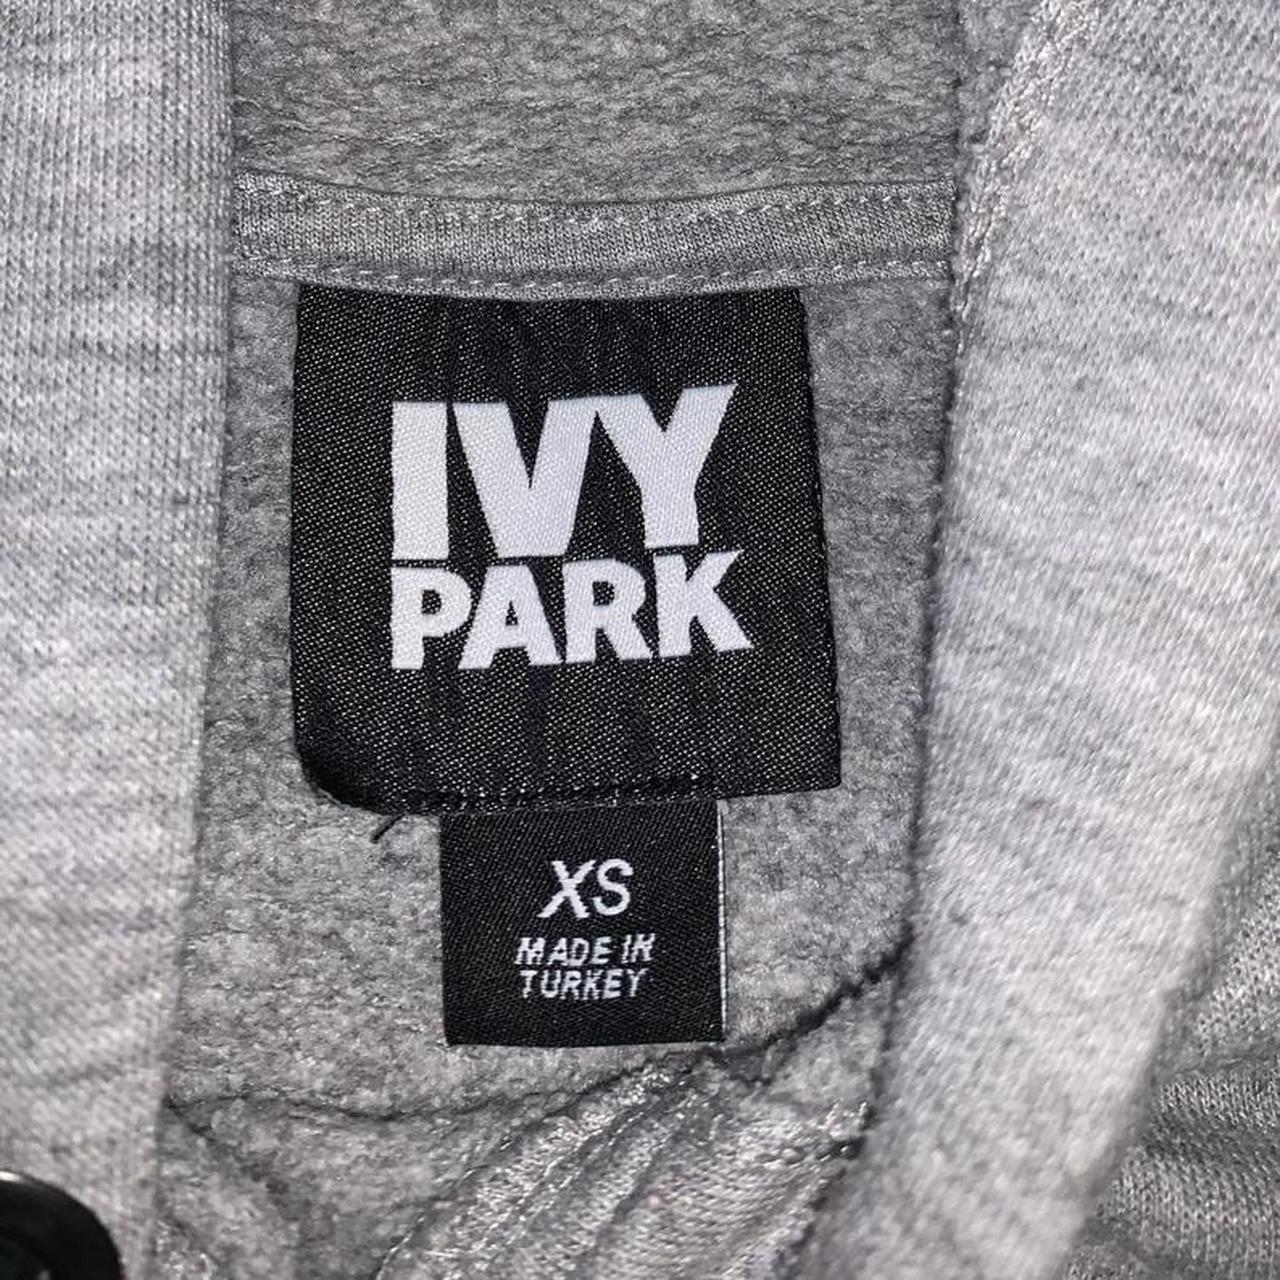 Grey Ivy Parks Hoodie Size XS ‘IVY PARKS’ printed... - Depop